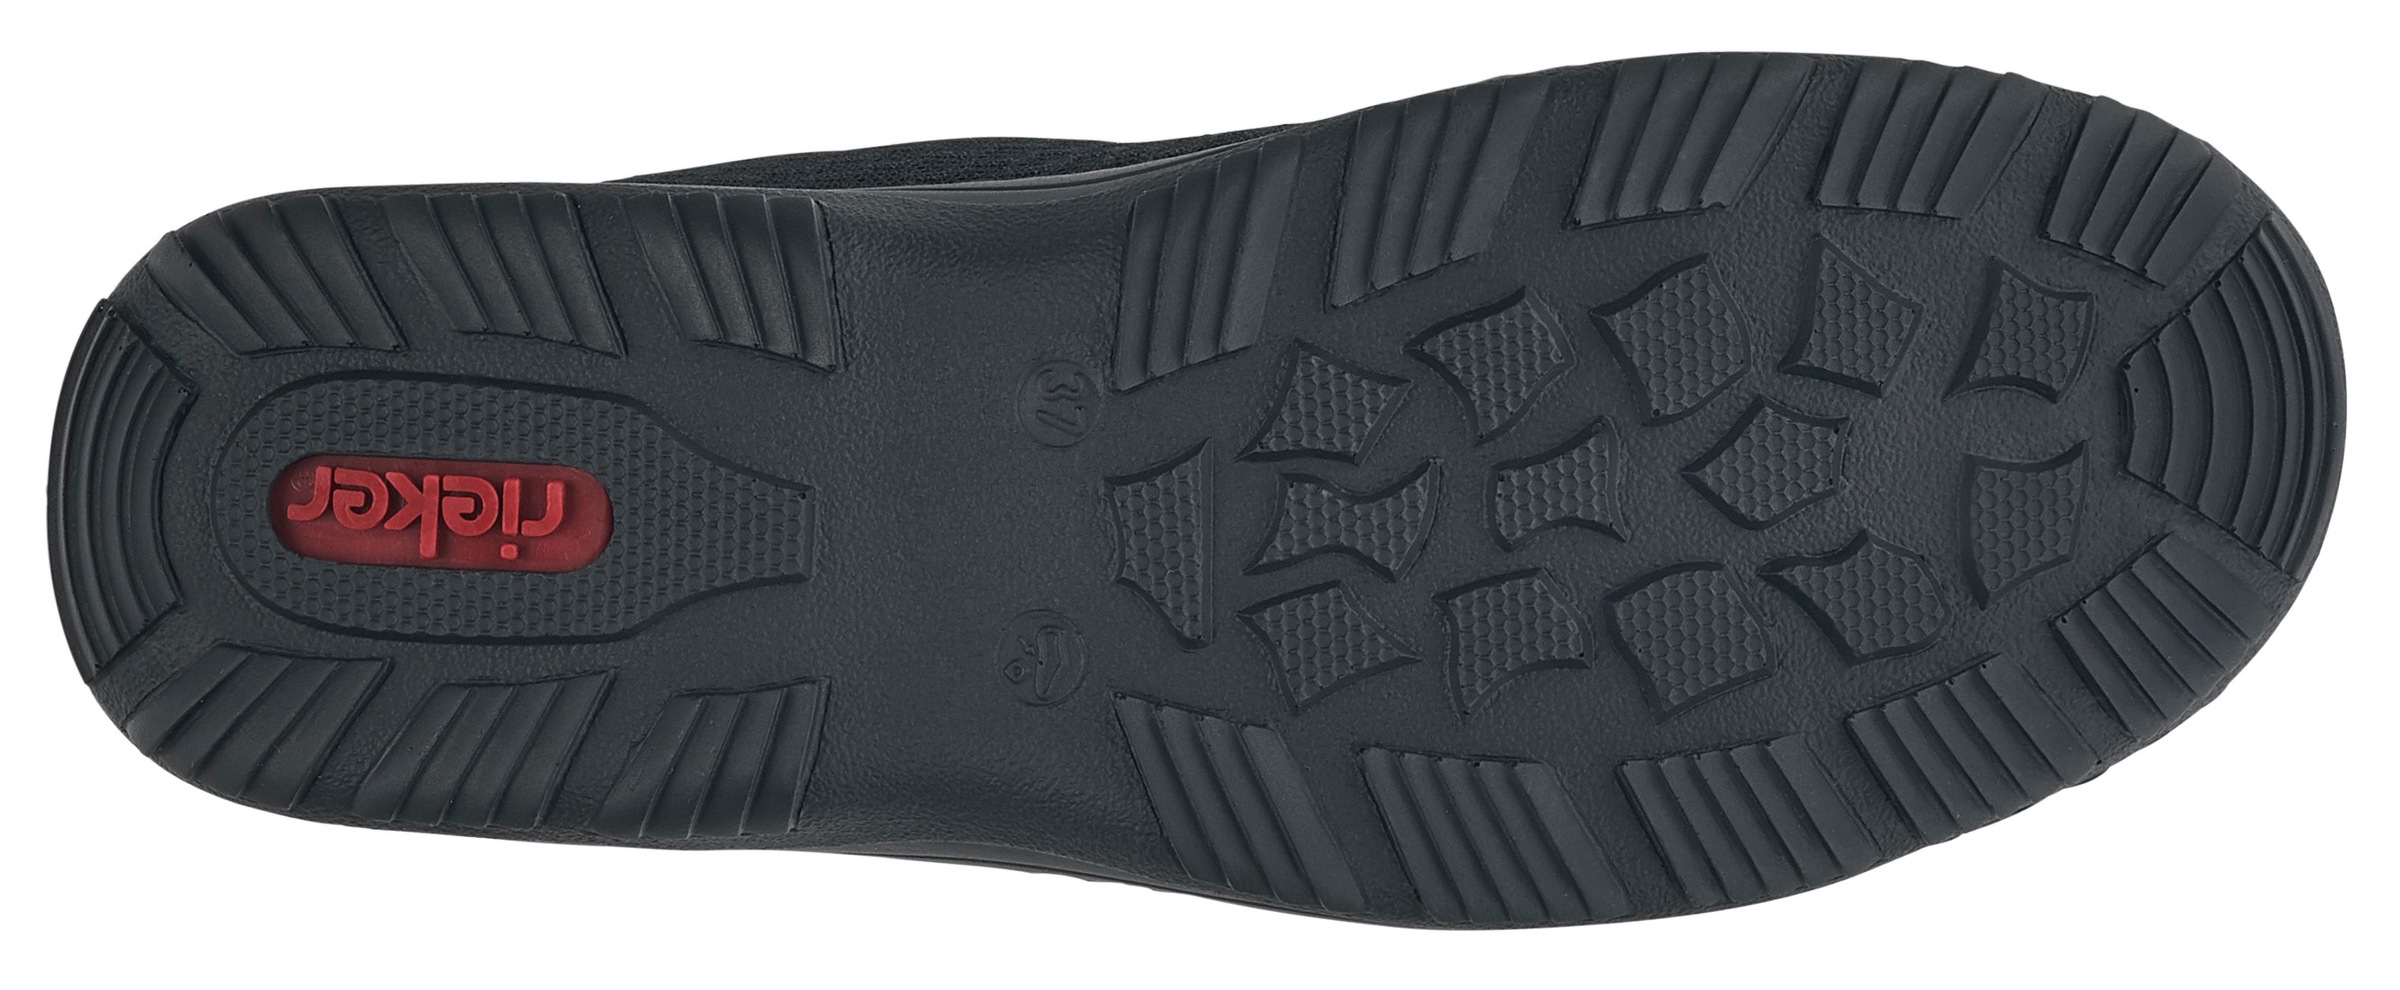 Rieker Slip-On Sneaker, Outdoor Schuh, Schlupfschuh, Slipper mit praktischem Schnellverschluss